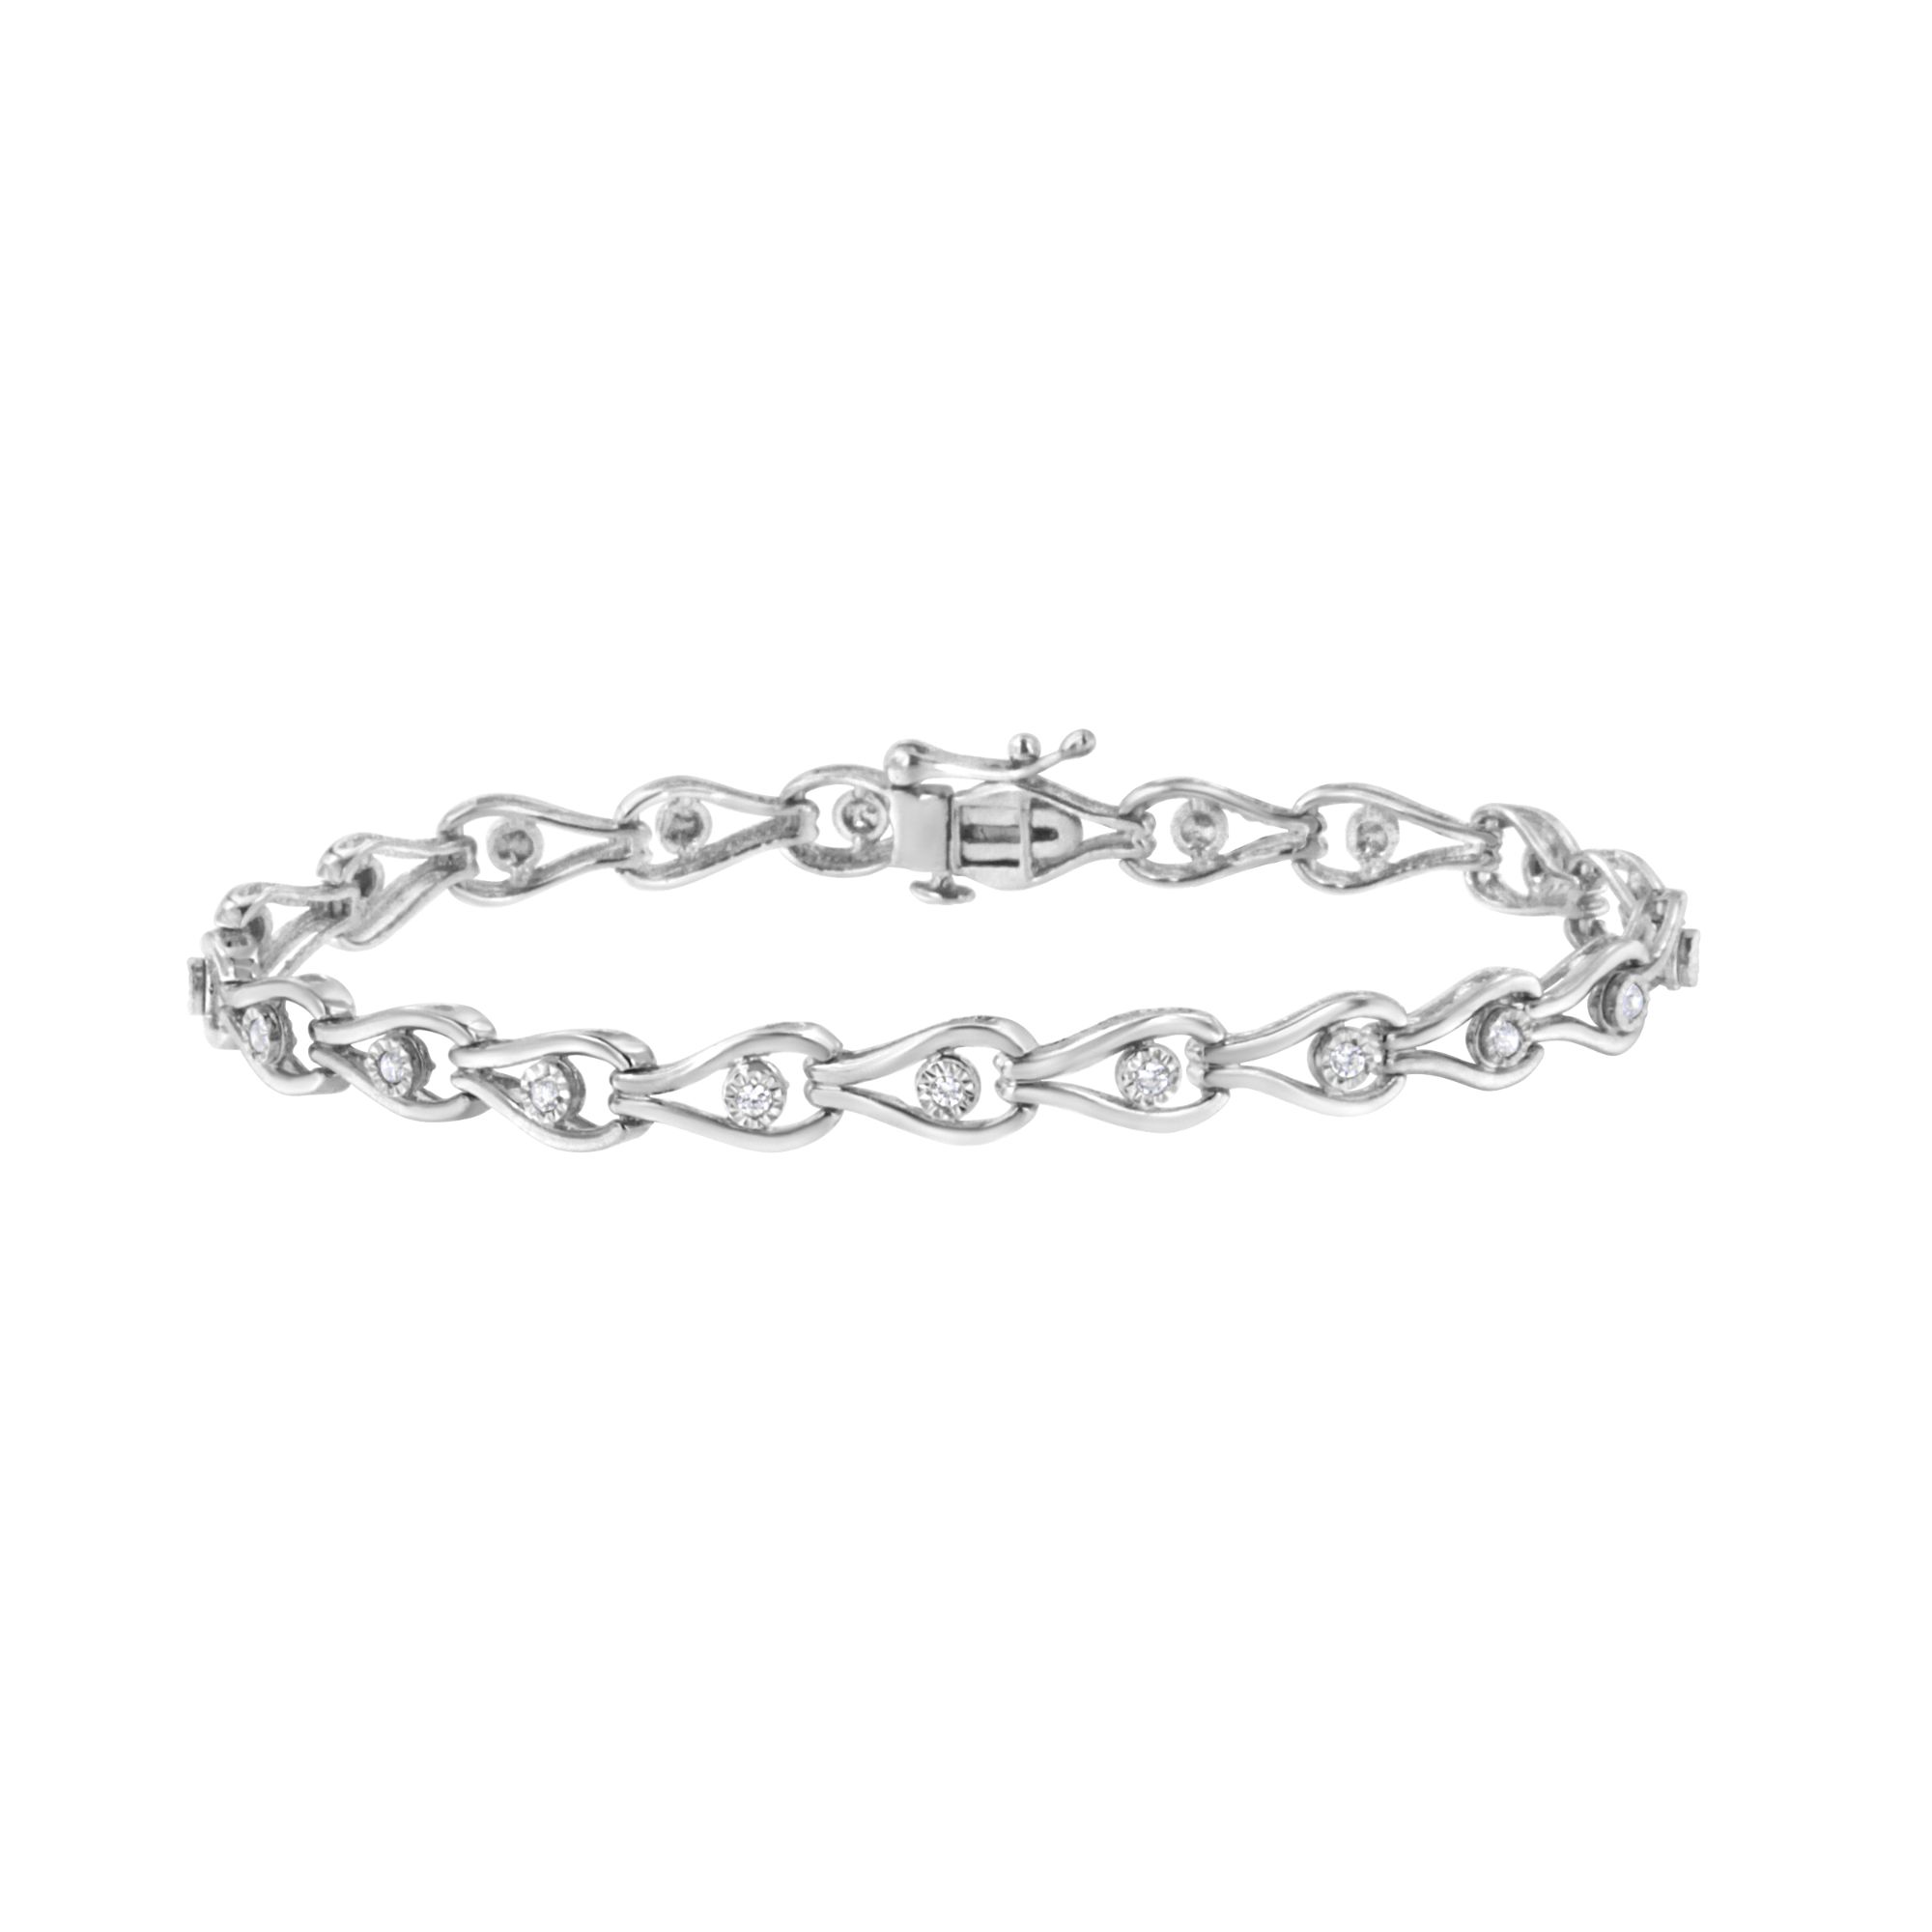 Luxe Jewelry Designs Women's Sterling Silver Diamond Pear Shaped Link Bracelet